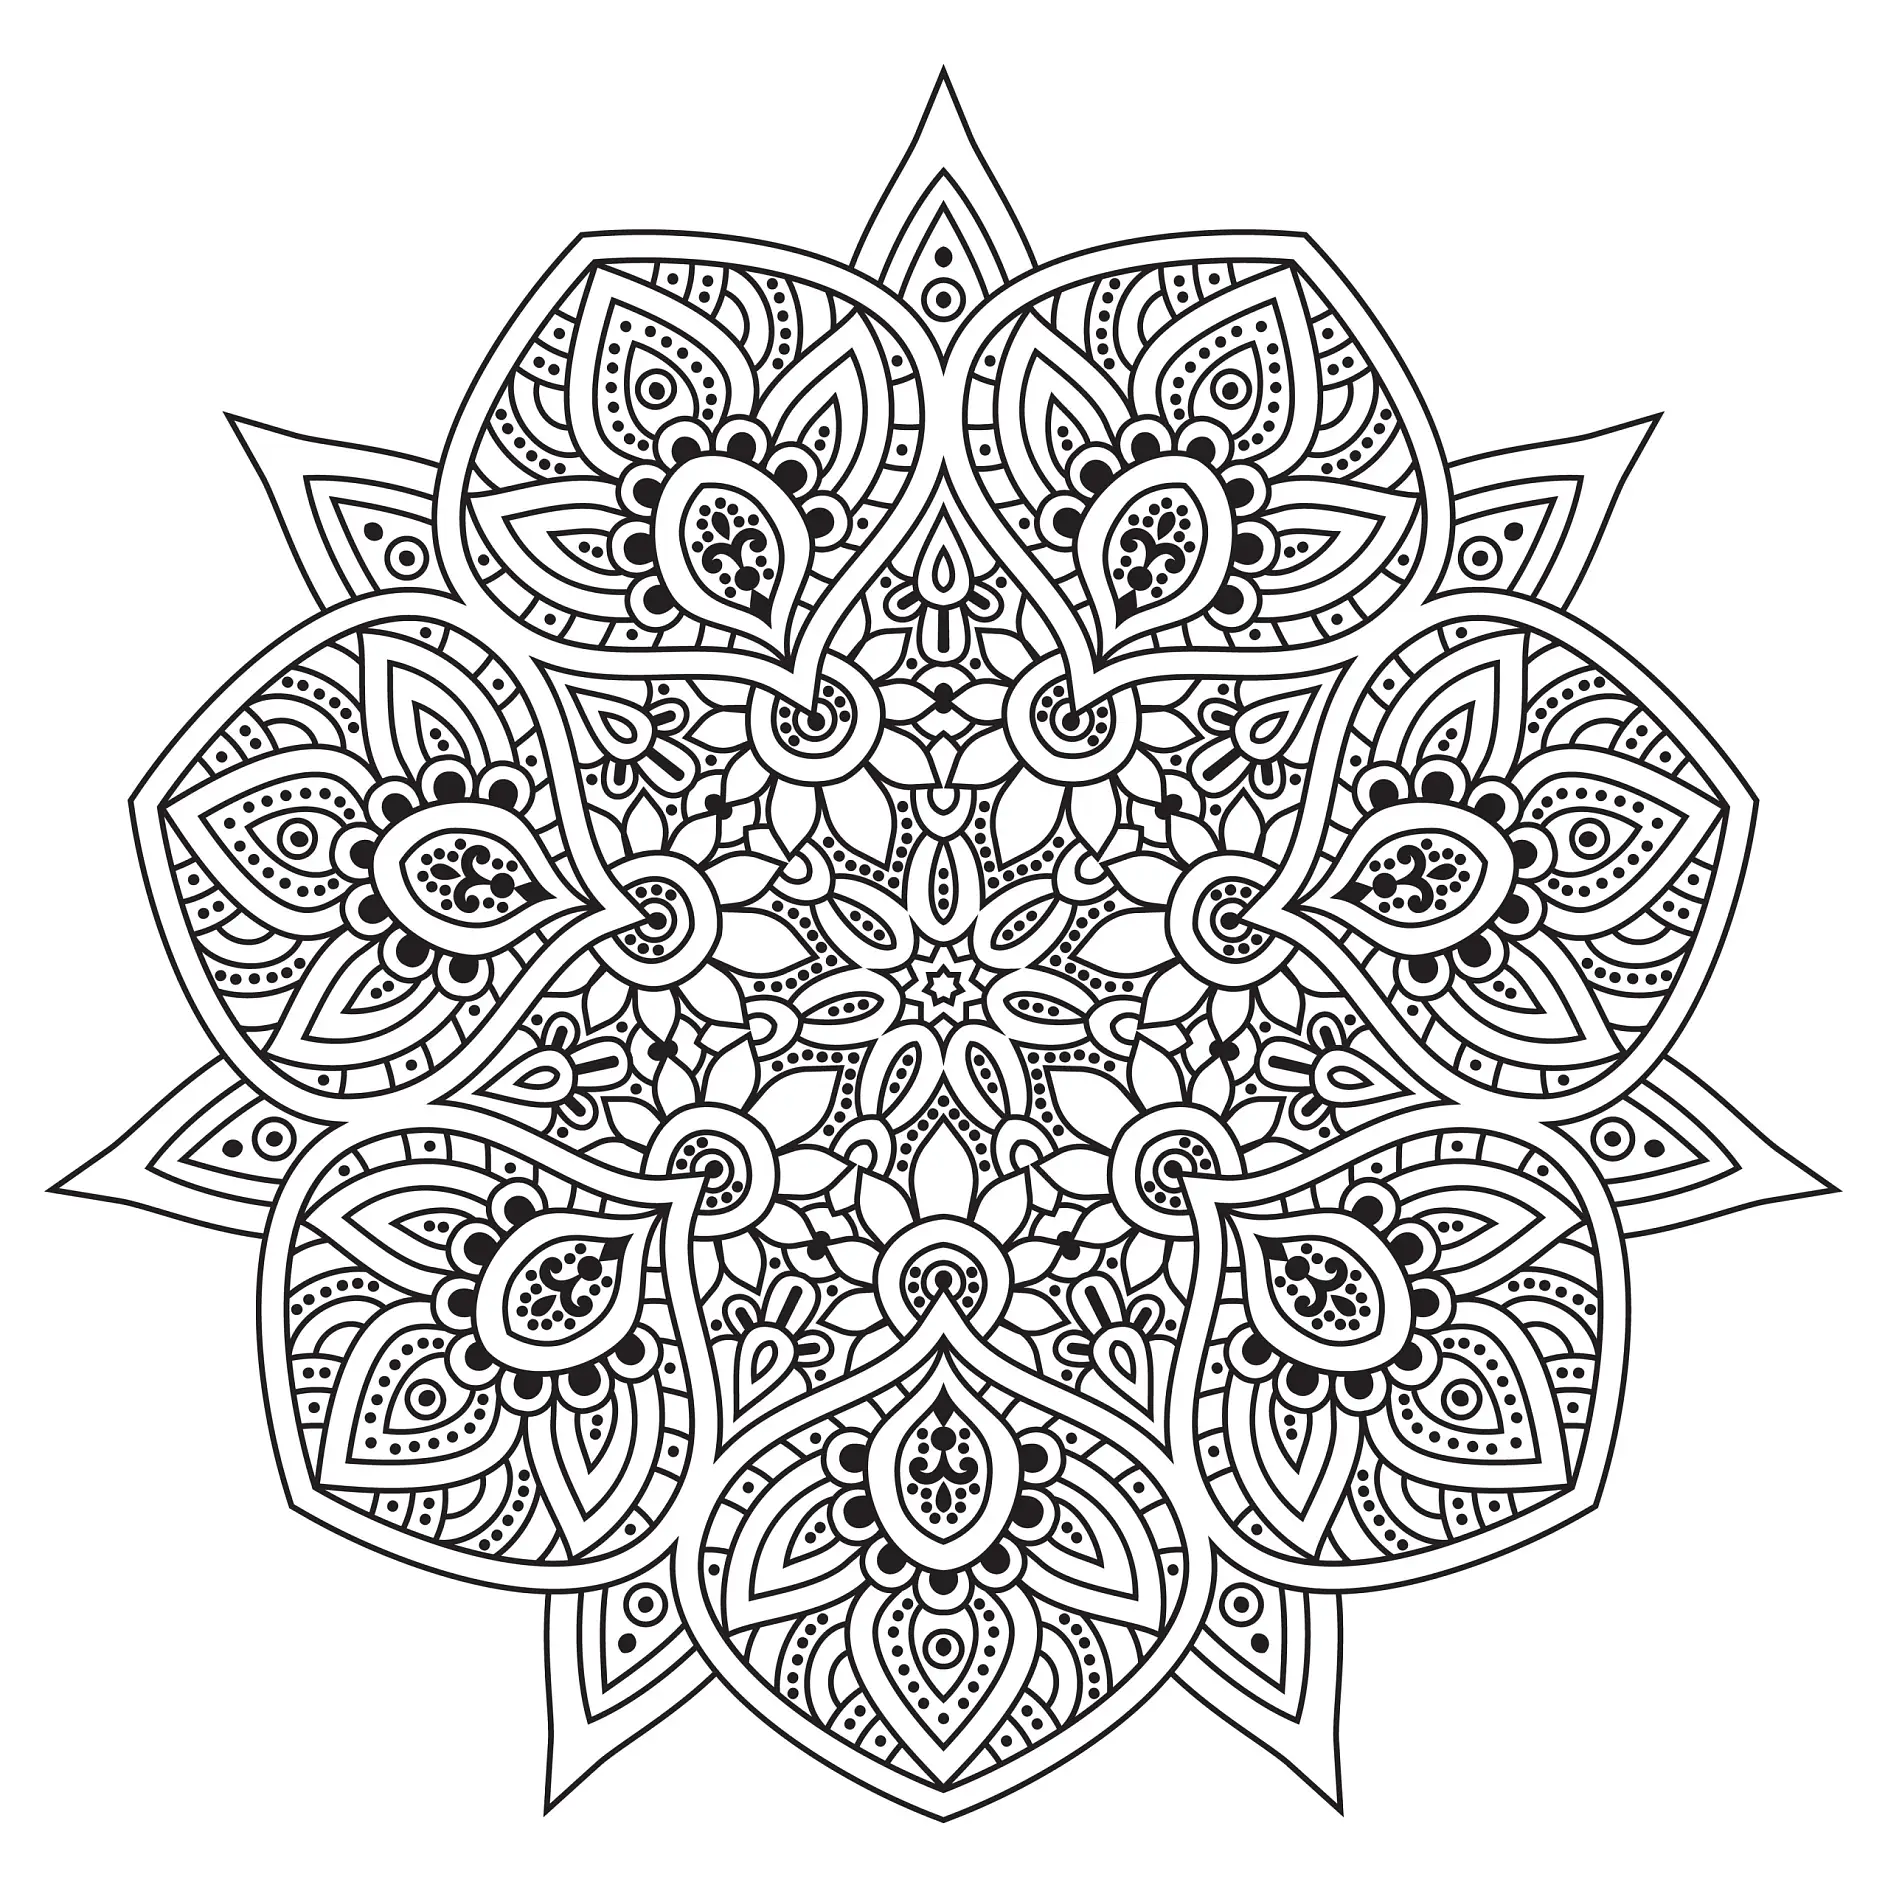 Ausmalbild Mandala mit detaillierten floralen Mustern